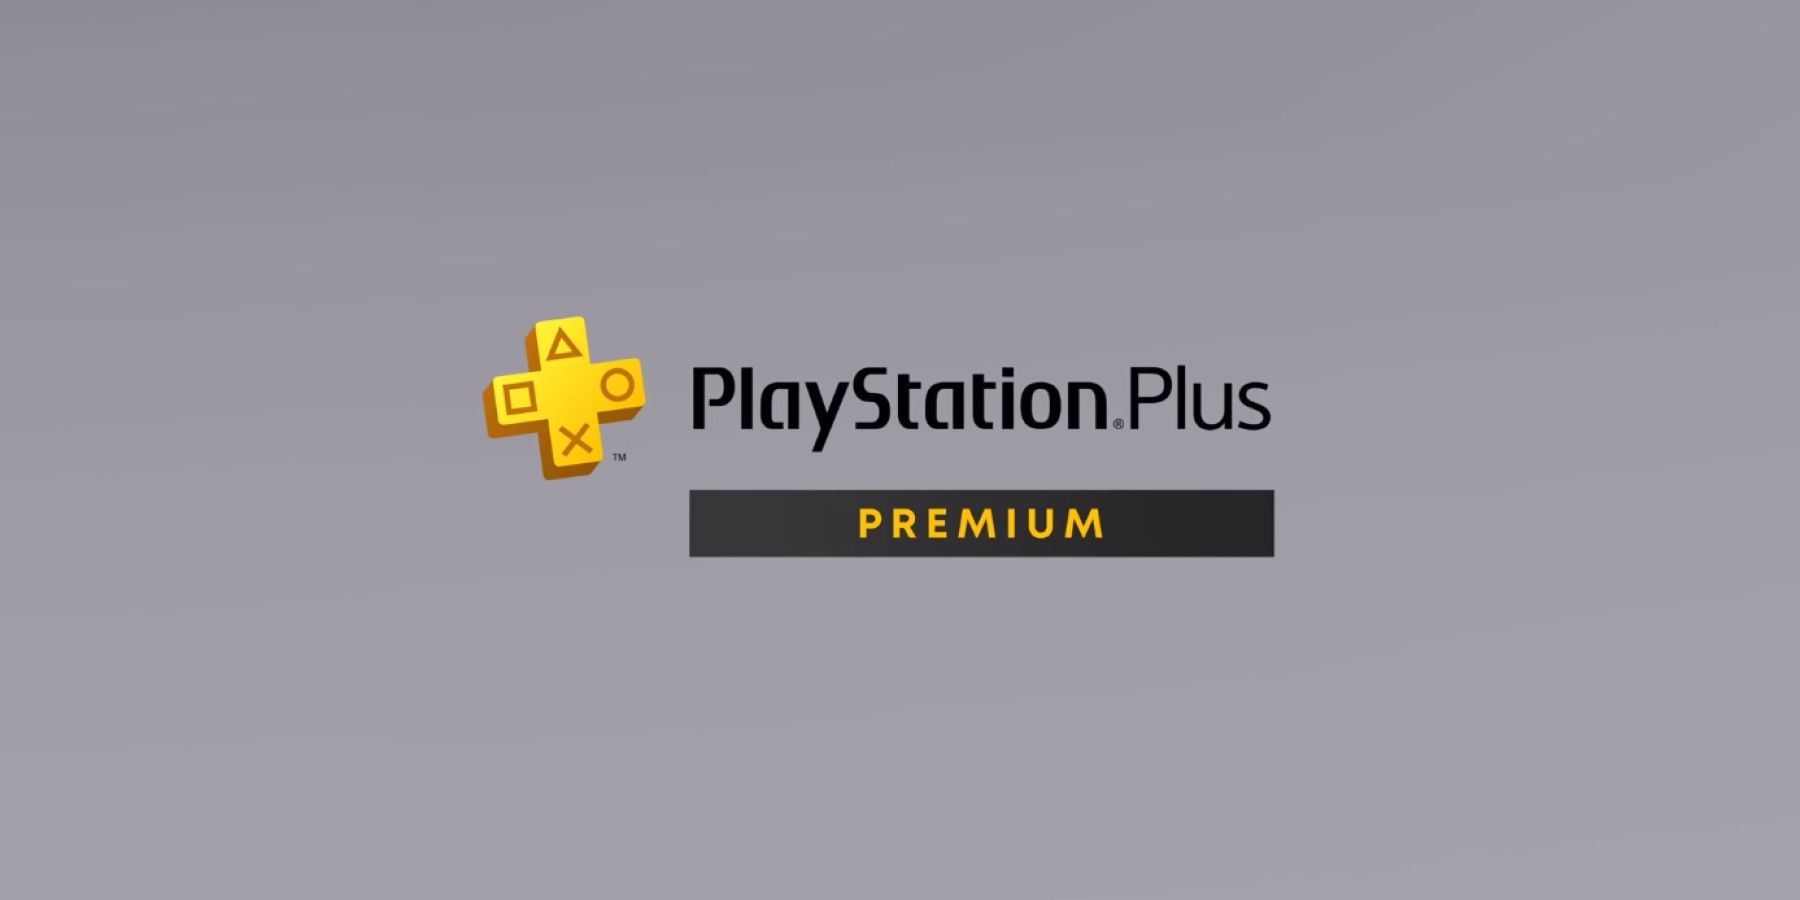 ps plus premium logo grey background featured